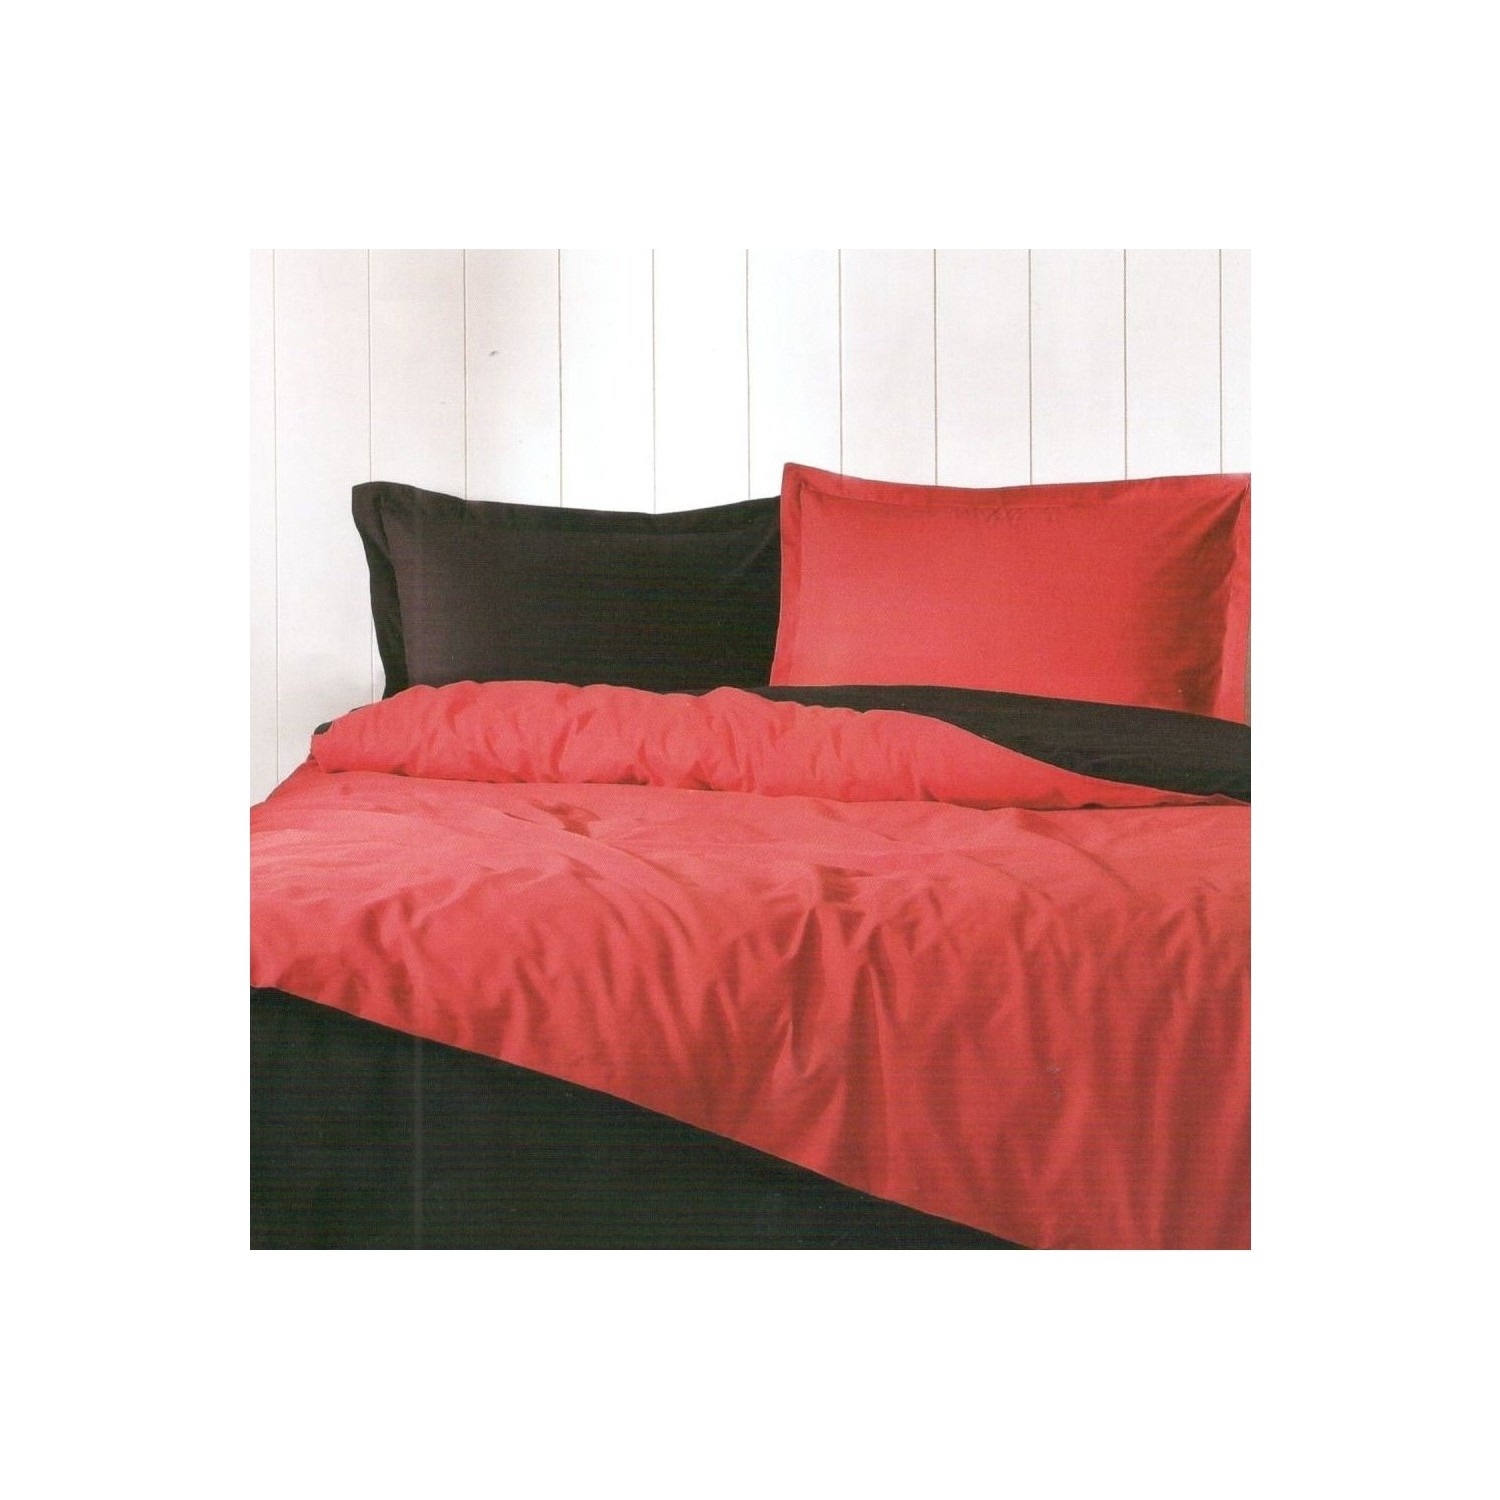 Комплект постельного белья Ozdilek Colormix, простой красный, черный